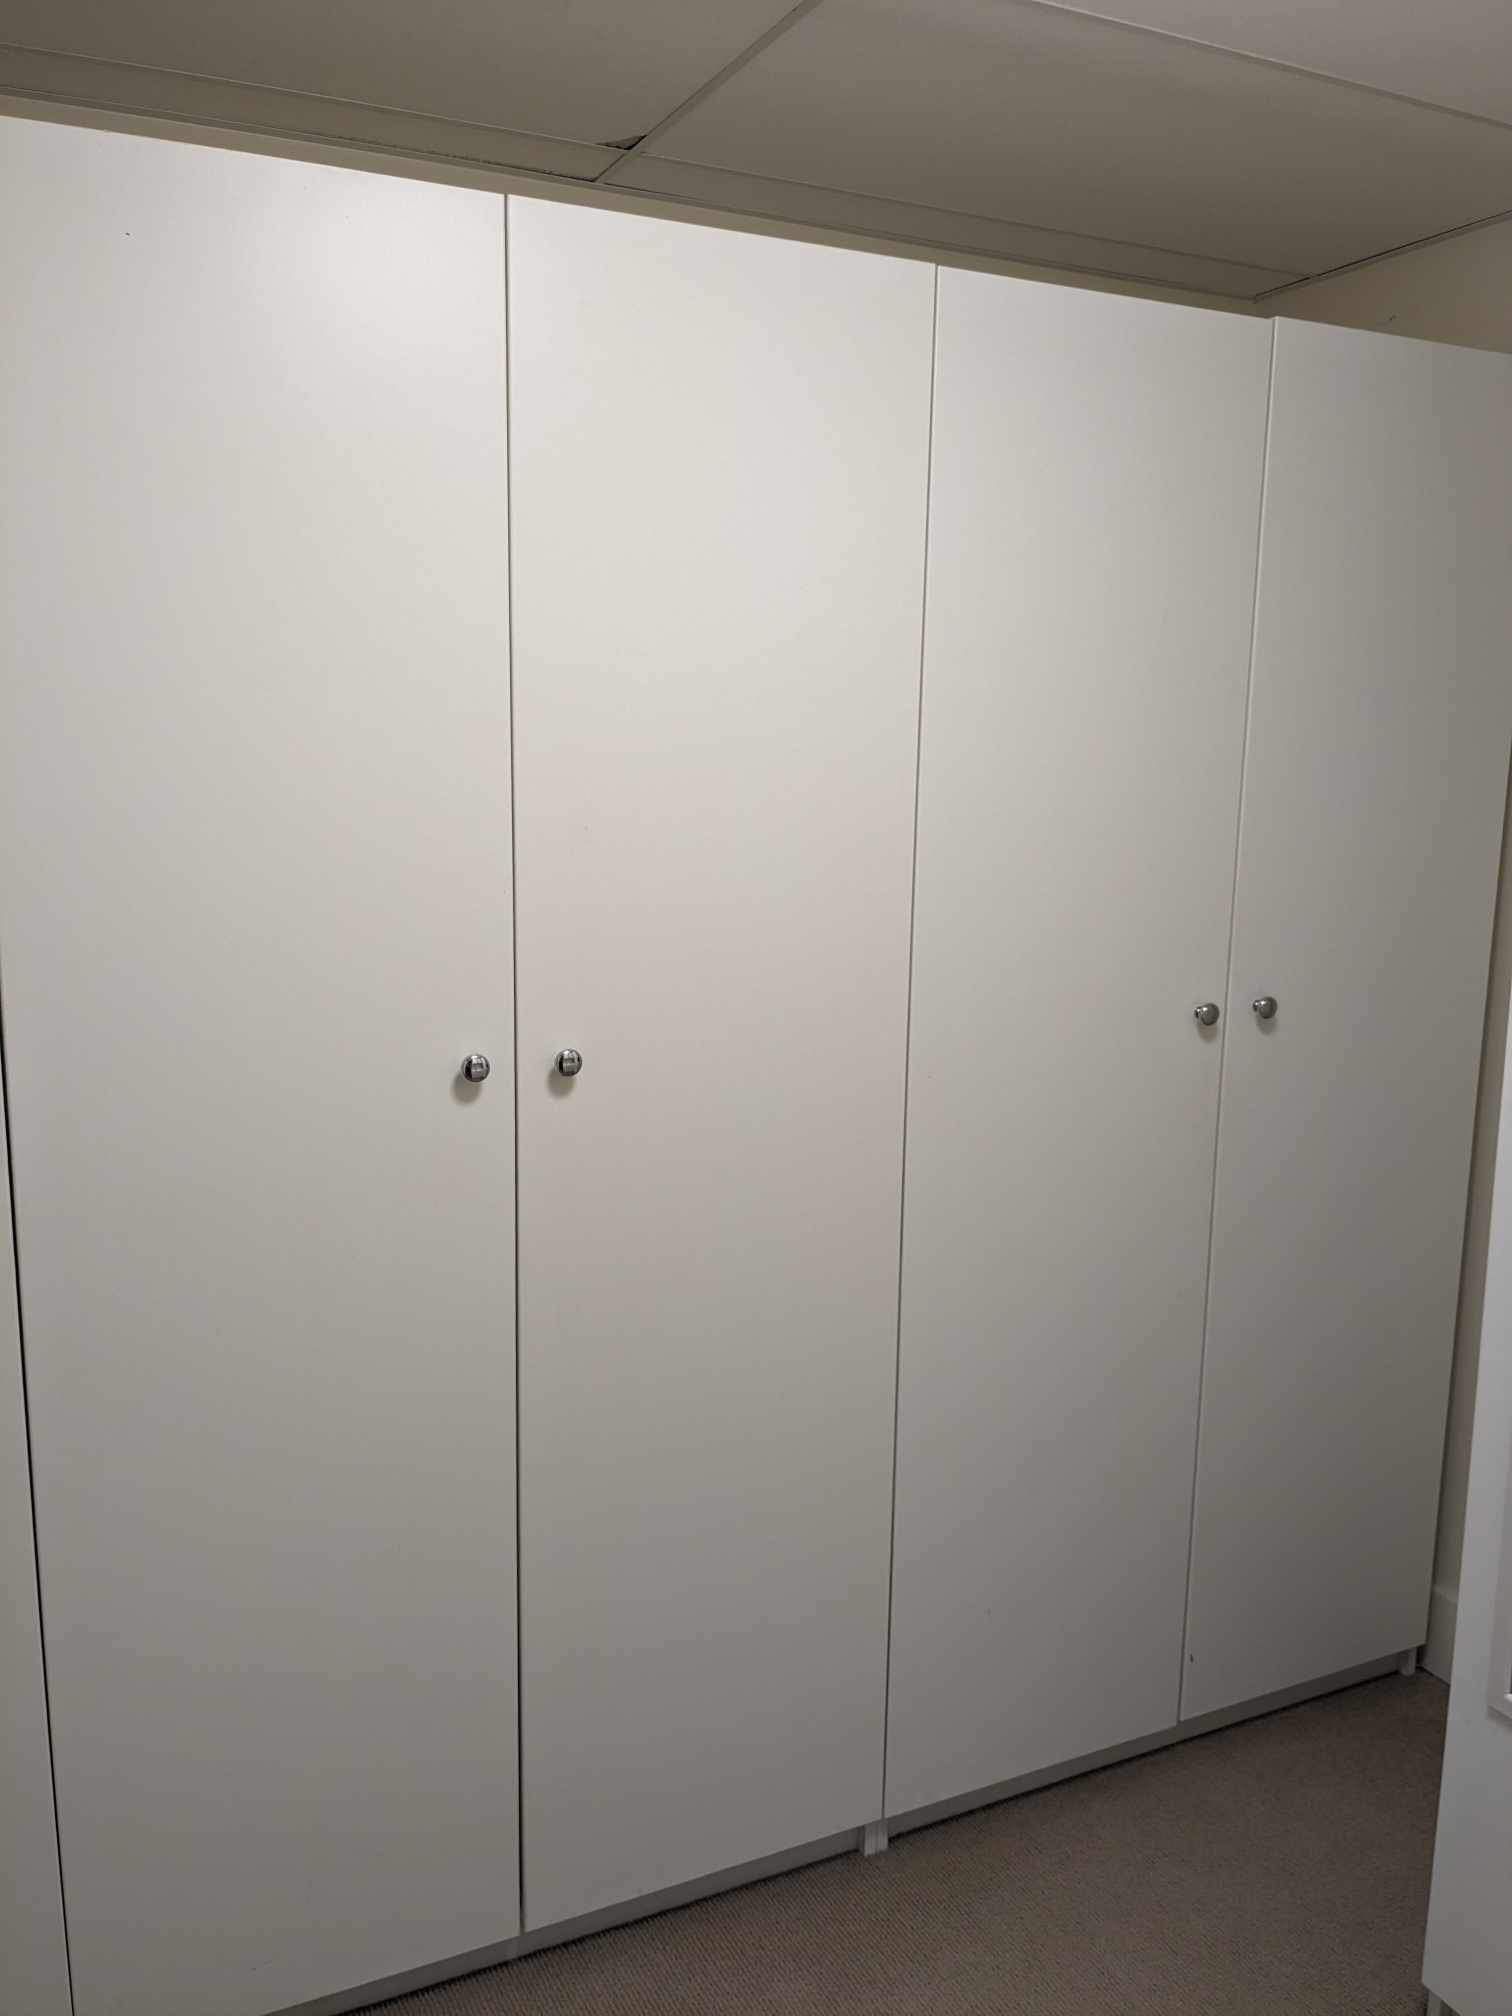 Giant Wardrobe/Closet Shelving Units